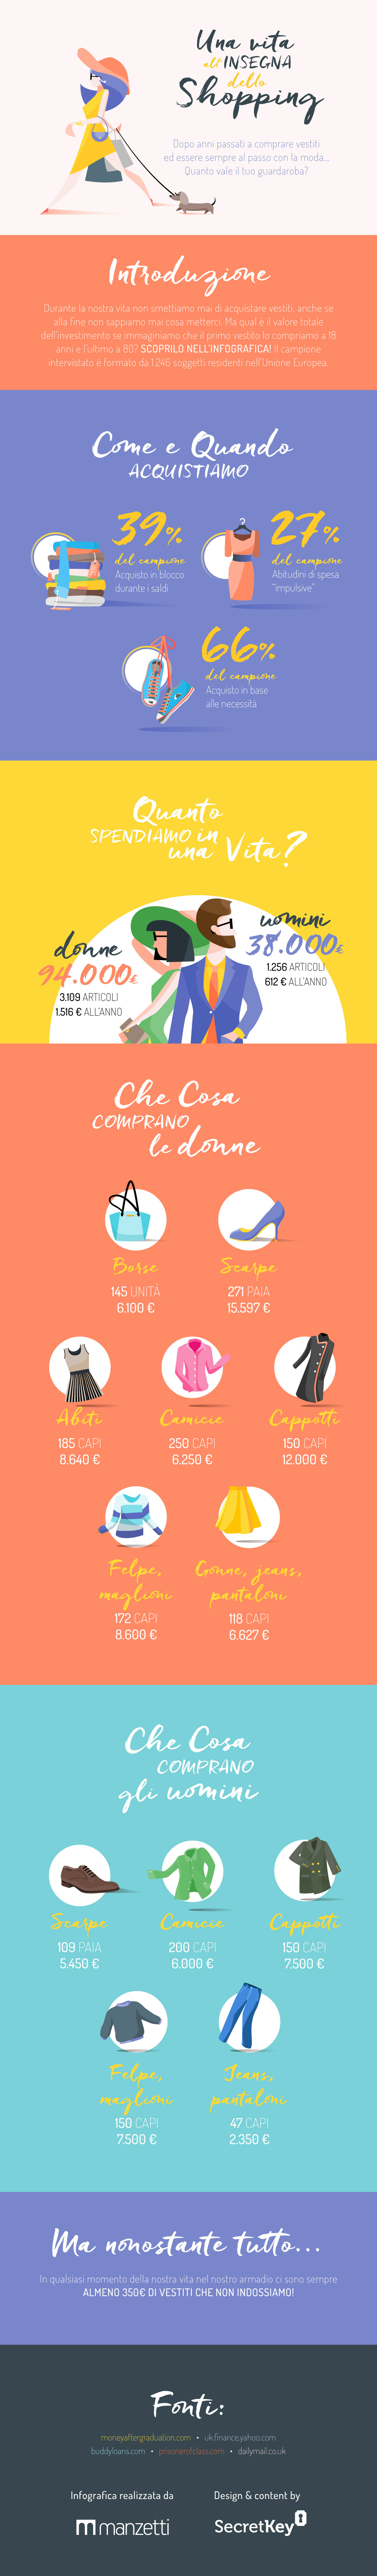 Infografía: ¡una vida de compras!